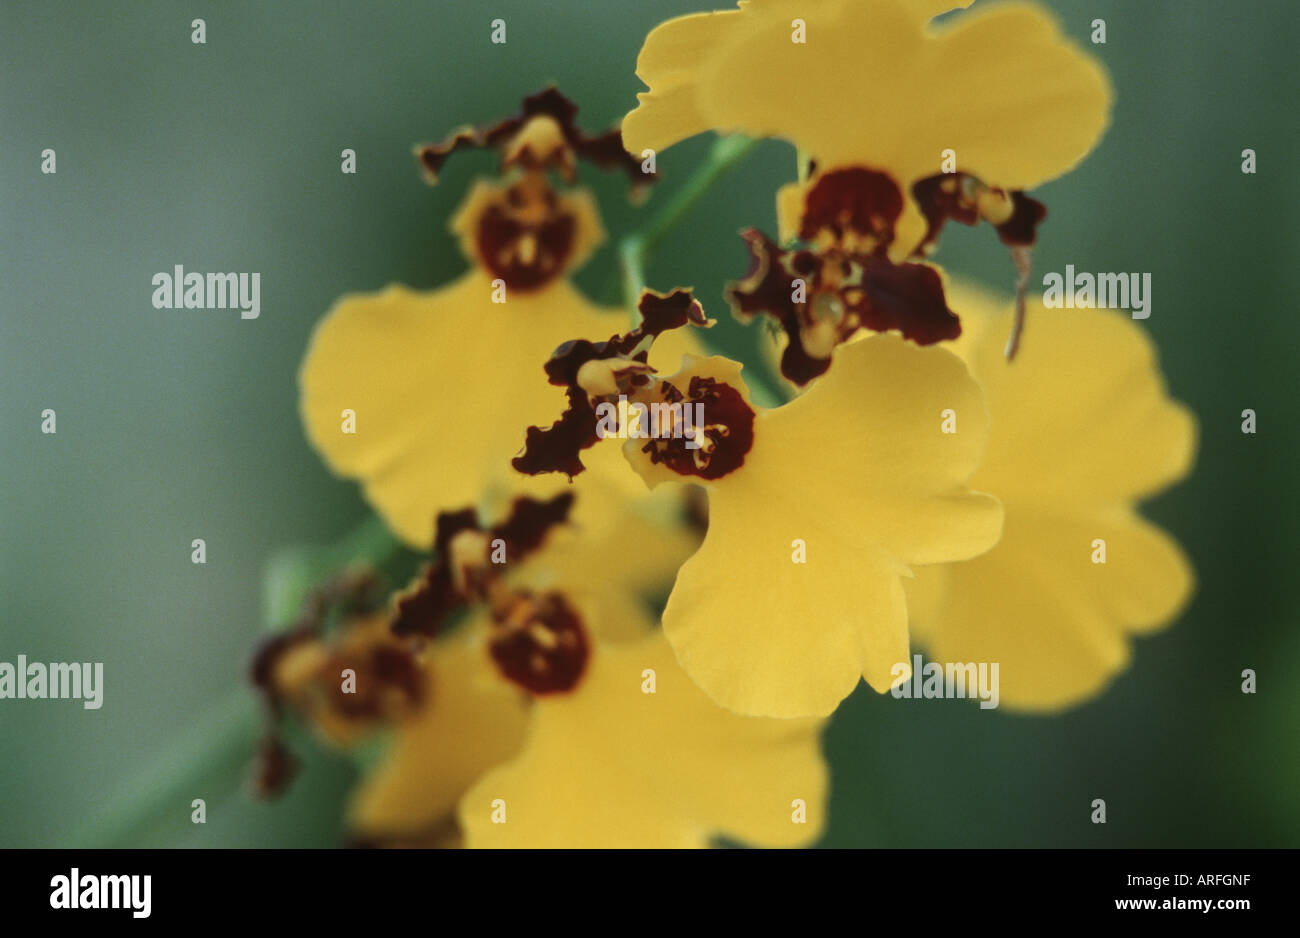 Oncidium insigne (Oncidium insigne), flowers Stock Photo